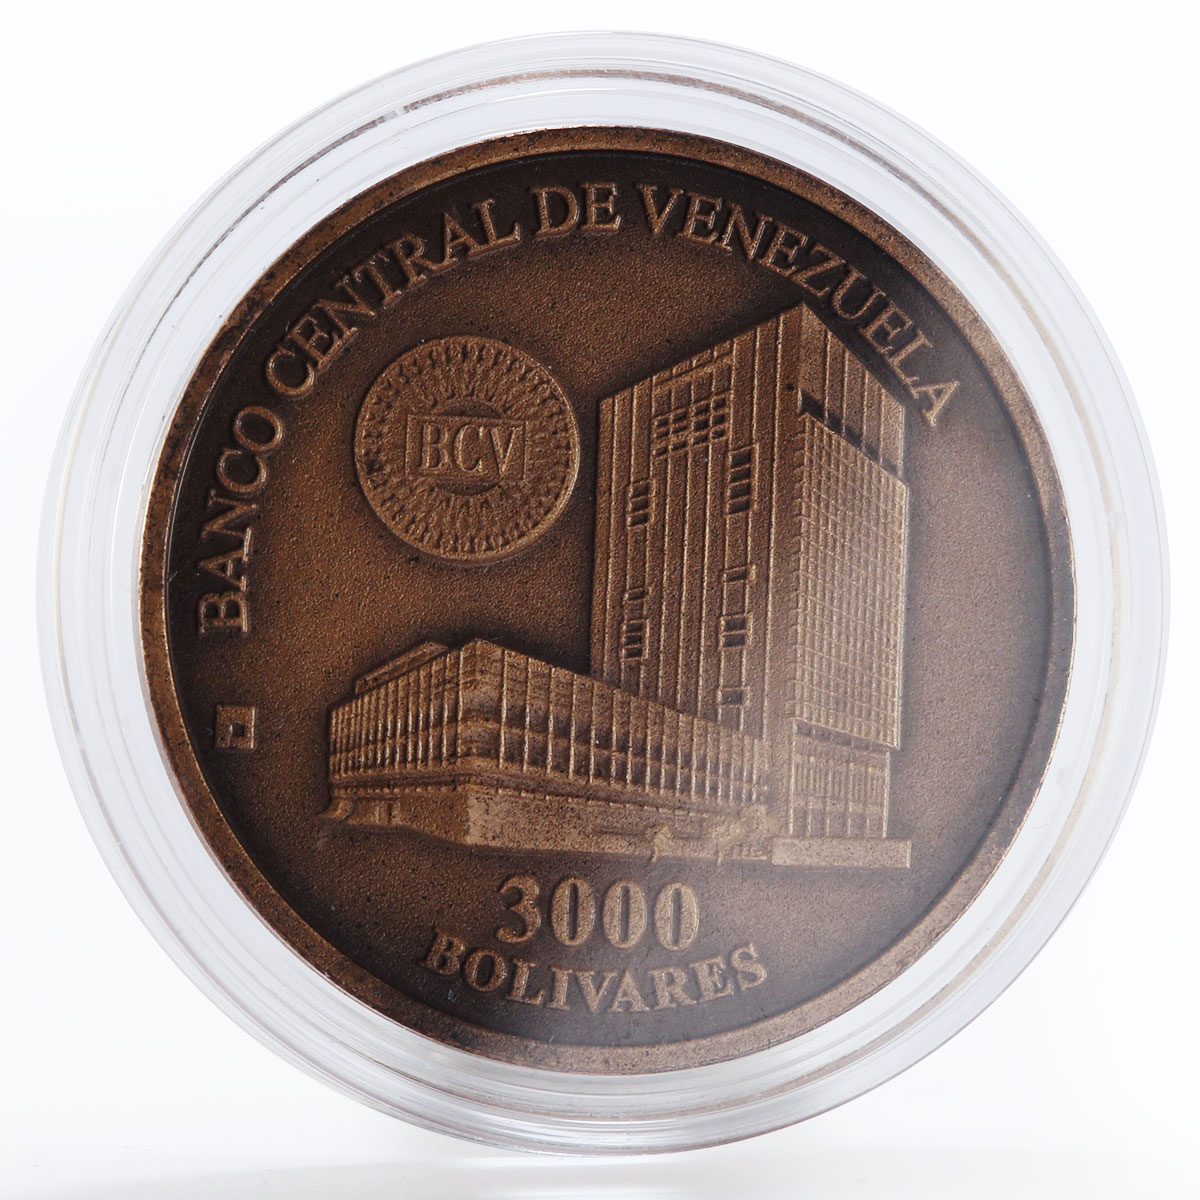 Venezuela 1 bolivares Mint house complex bank bronze coin 1999